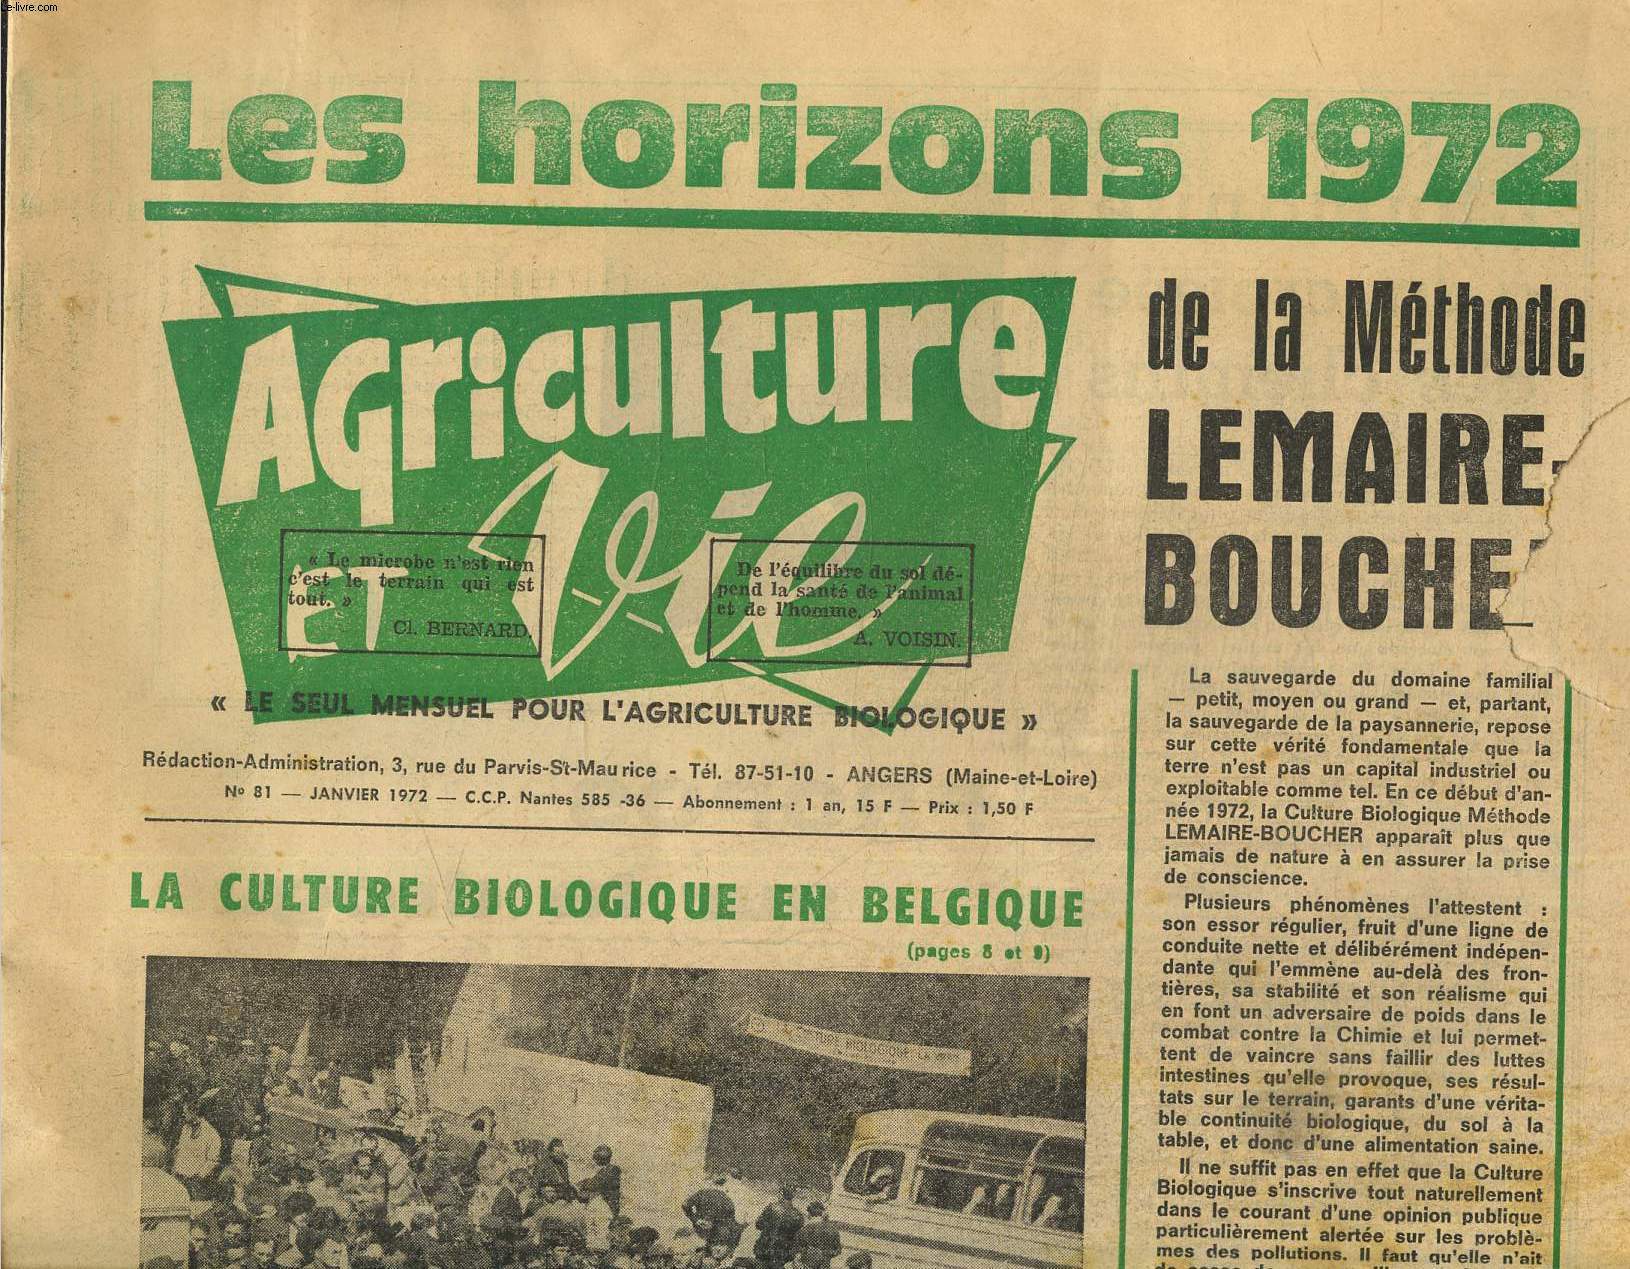 Agriculture et vie N81, janvier 1972. Les horizons 1972, de la mthode Lemaire Boucher.